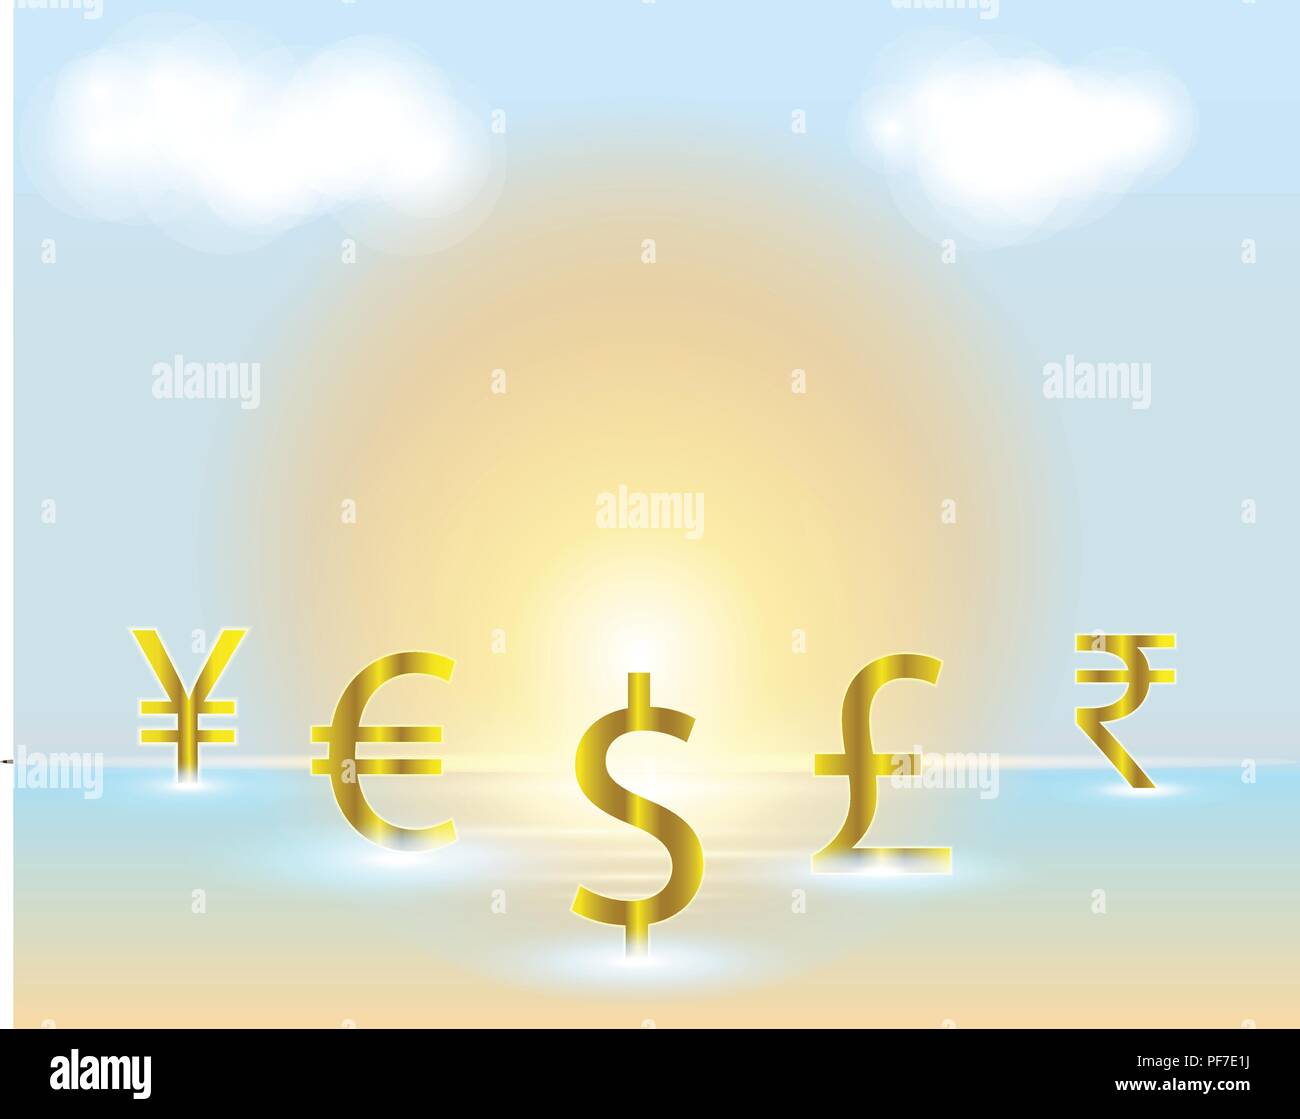 Simbolo di valuta dollaro,Euro,Rupia Indiana,British Pound,yuan cinese,Yen giapponese valuta il modello di business di concetti di scambio sulla spiaggia. Vector illus Illustrazione Vettoriale